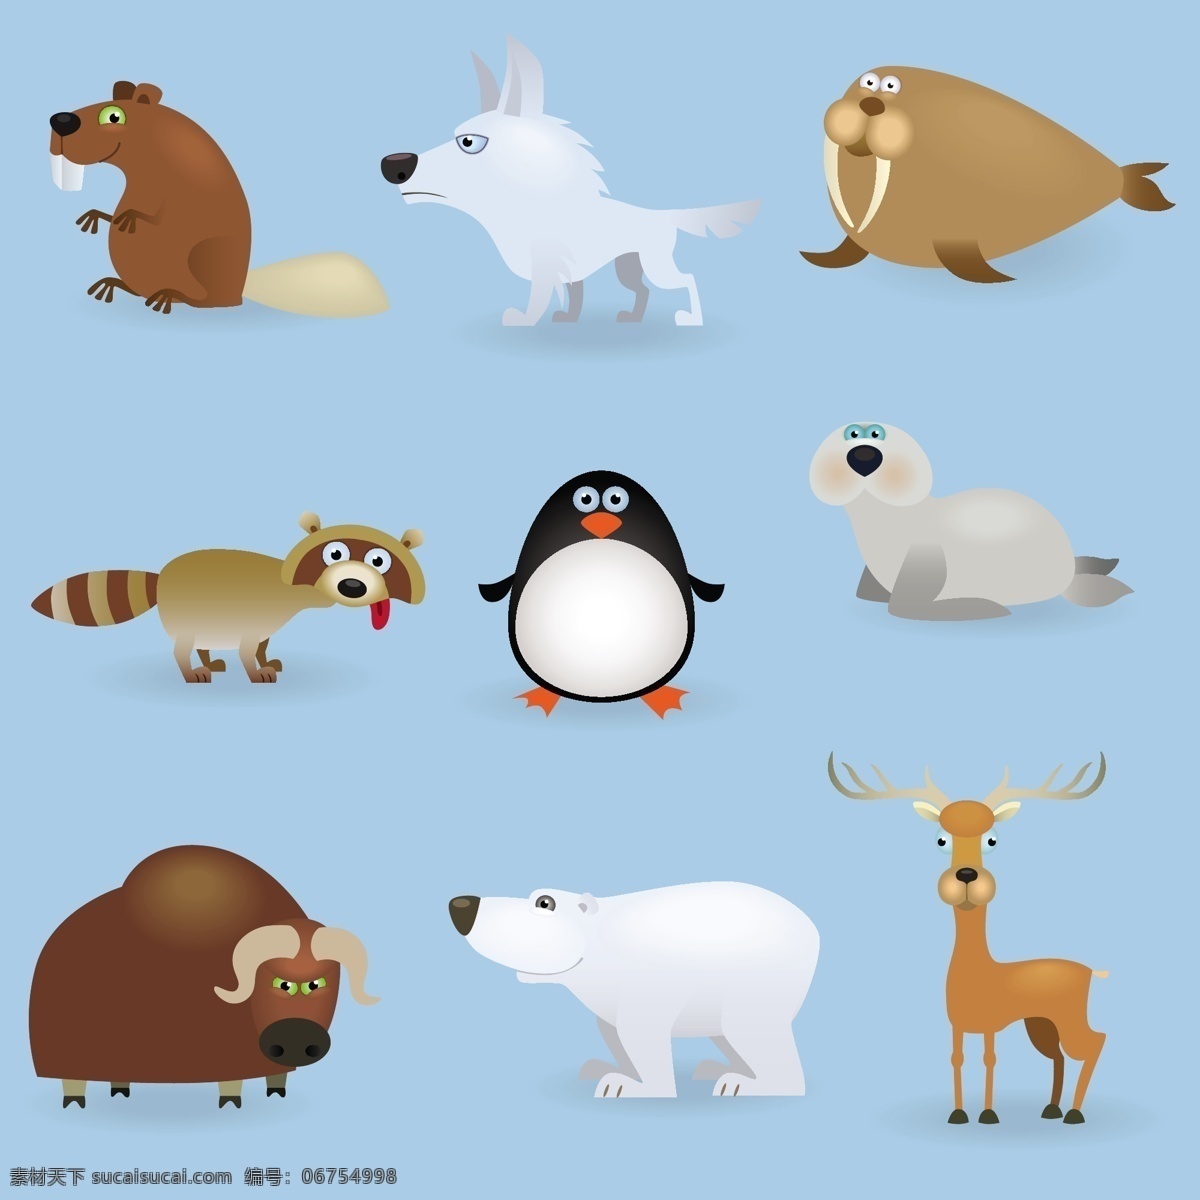 各种 可爱 动物 卡通 卡通生物 北极熊 企鹅 海狮 海象 鼹鼠 麋鹿 陆地动物 生物世界 矢量素材 青色 天蓝色